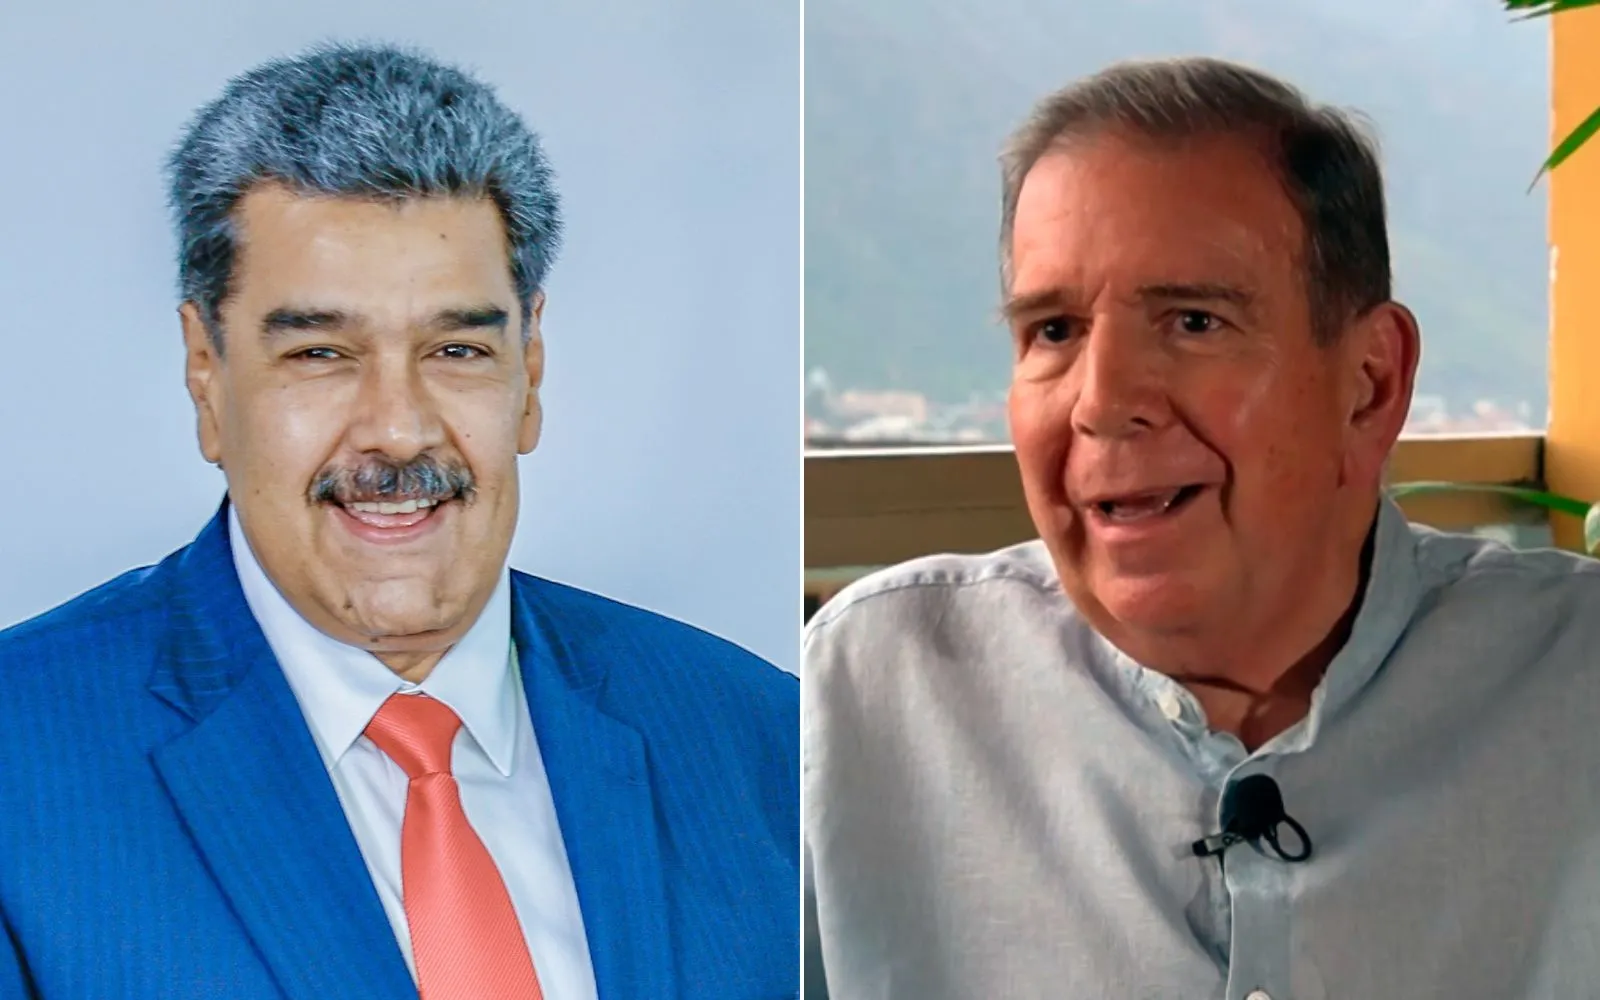 Nicolás Maduro y Edmundo Gonzpalez Urrutia, candidatos presidenciales en Venezuela.?w=200&h=150